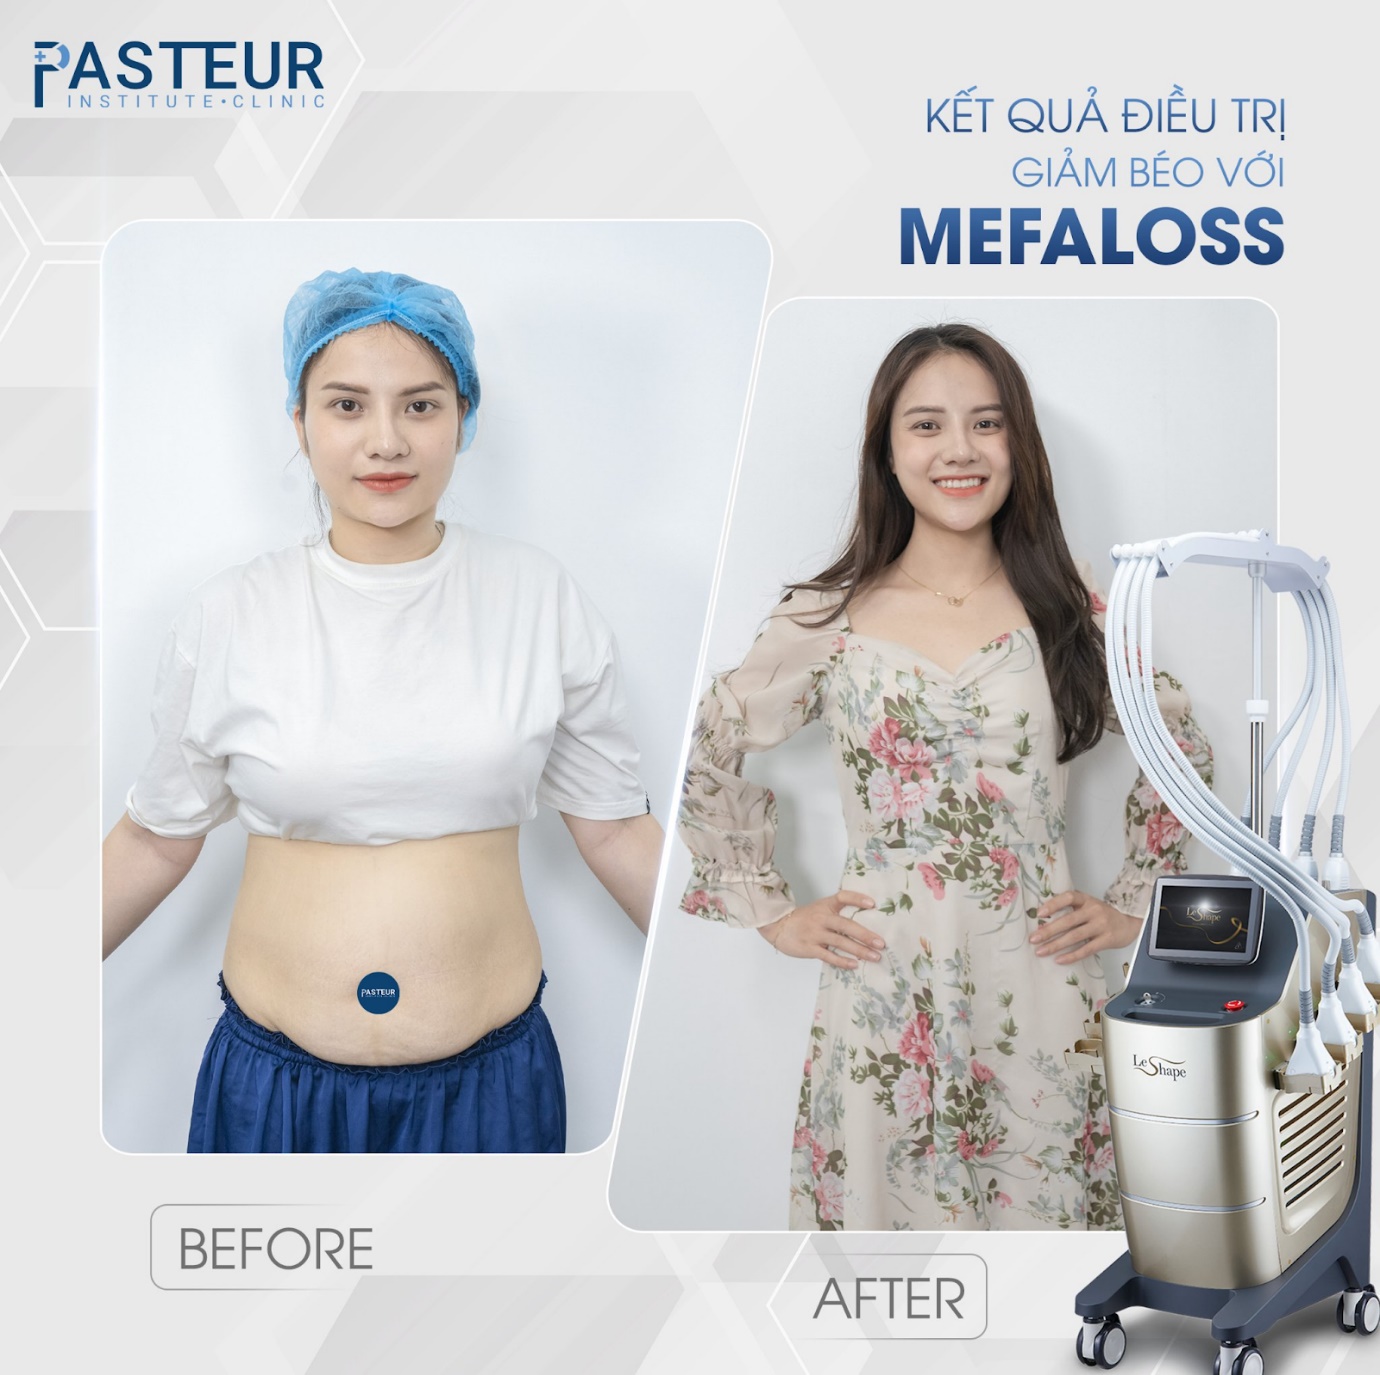 Trải nghiệm công nghệ giảm mỡ hiện đại chuẩn y khoa tại Viện giảm béo Pasteur - 5